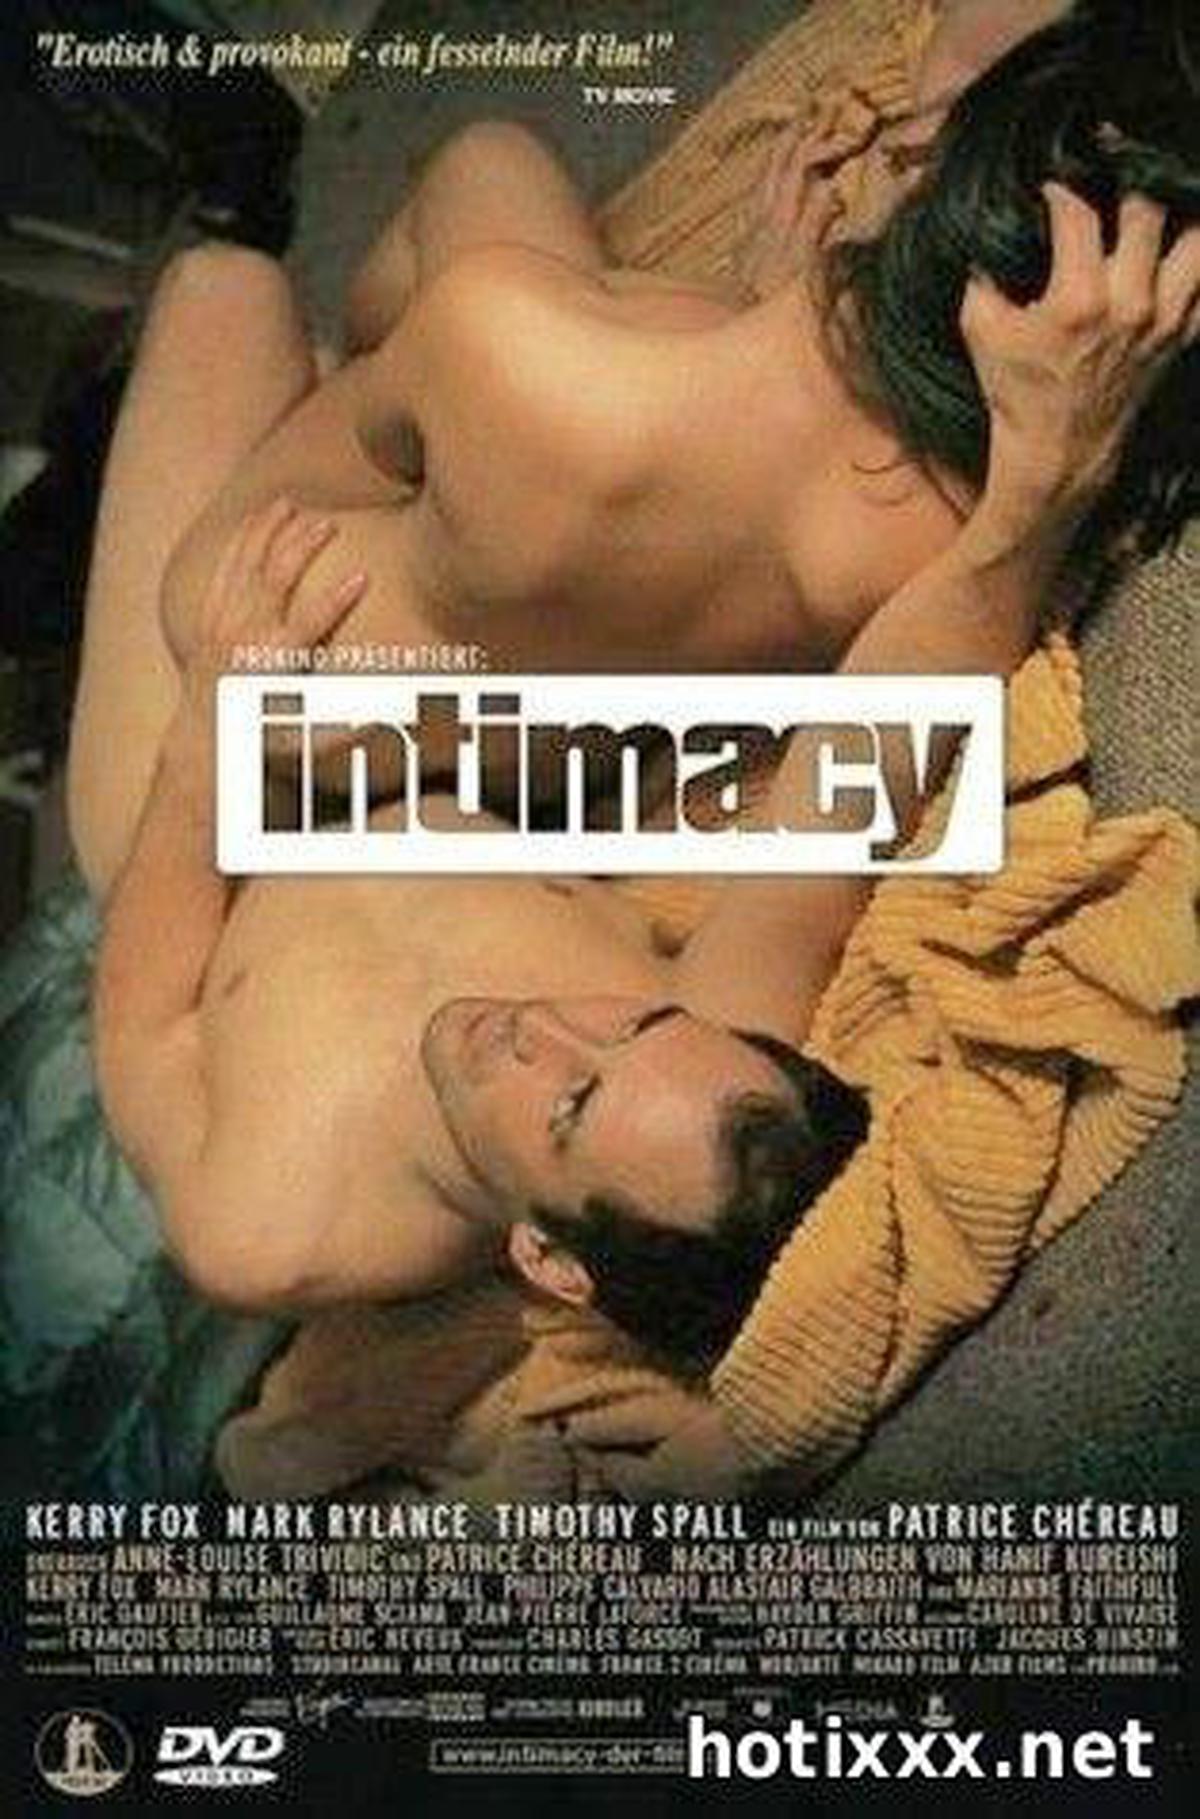 Интим / Intimacy () DVDRip скачать бесплатно